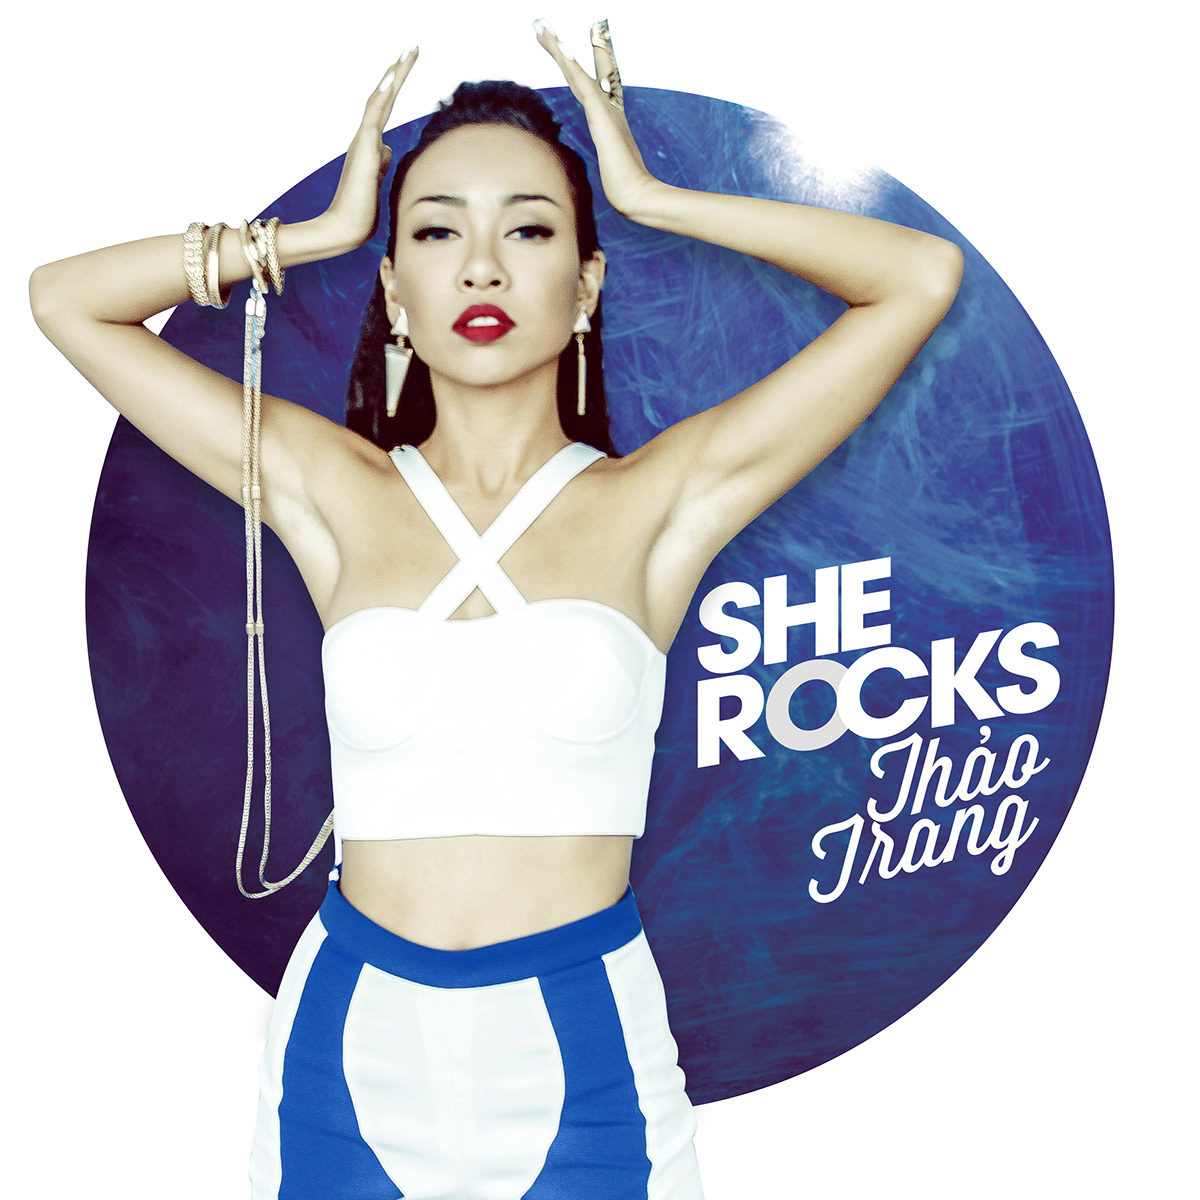 SHE ROCKS rocks Khanh Tam music video blue White Retro she Pop Art thao trang ciroc gray lam thanh tung